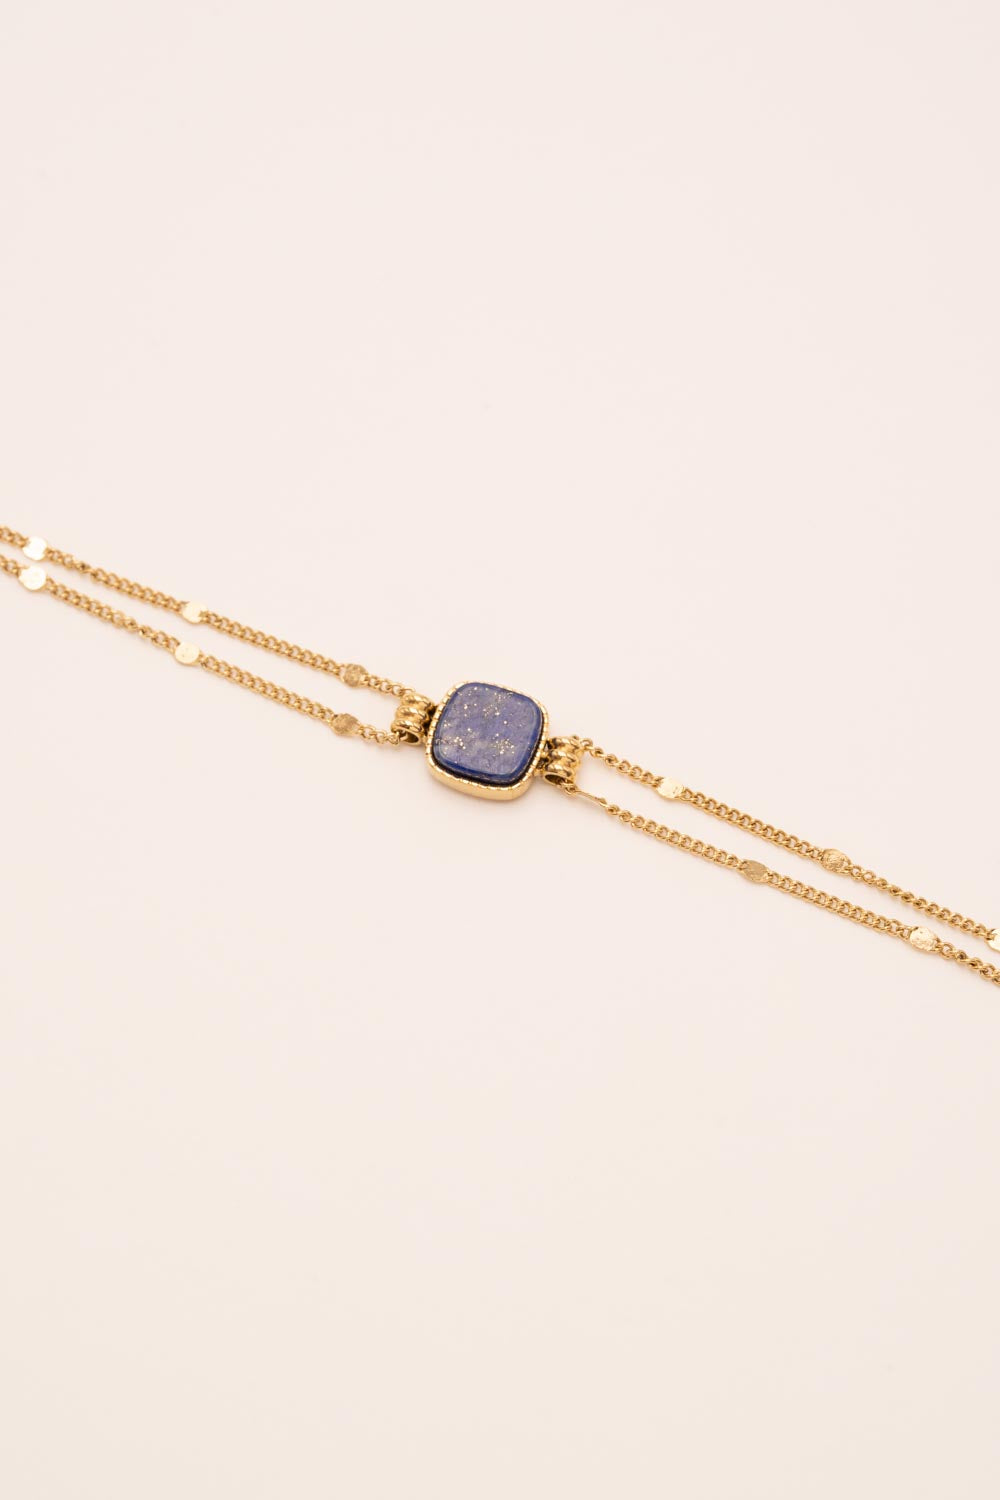 Bracelet Bohm Paris - Chloefina Bracelets Bohm Paris Lapis lazuli 